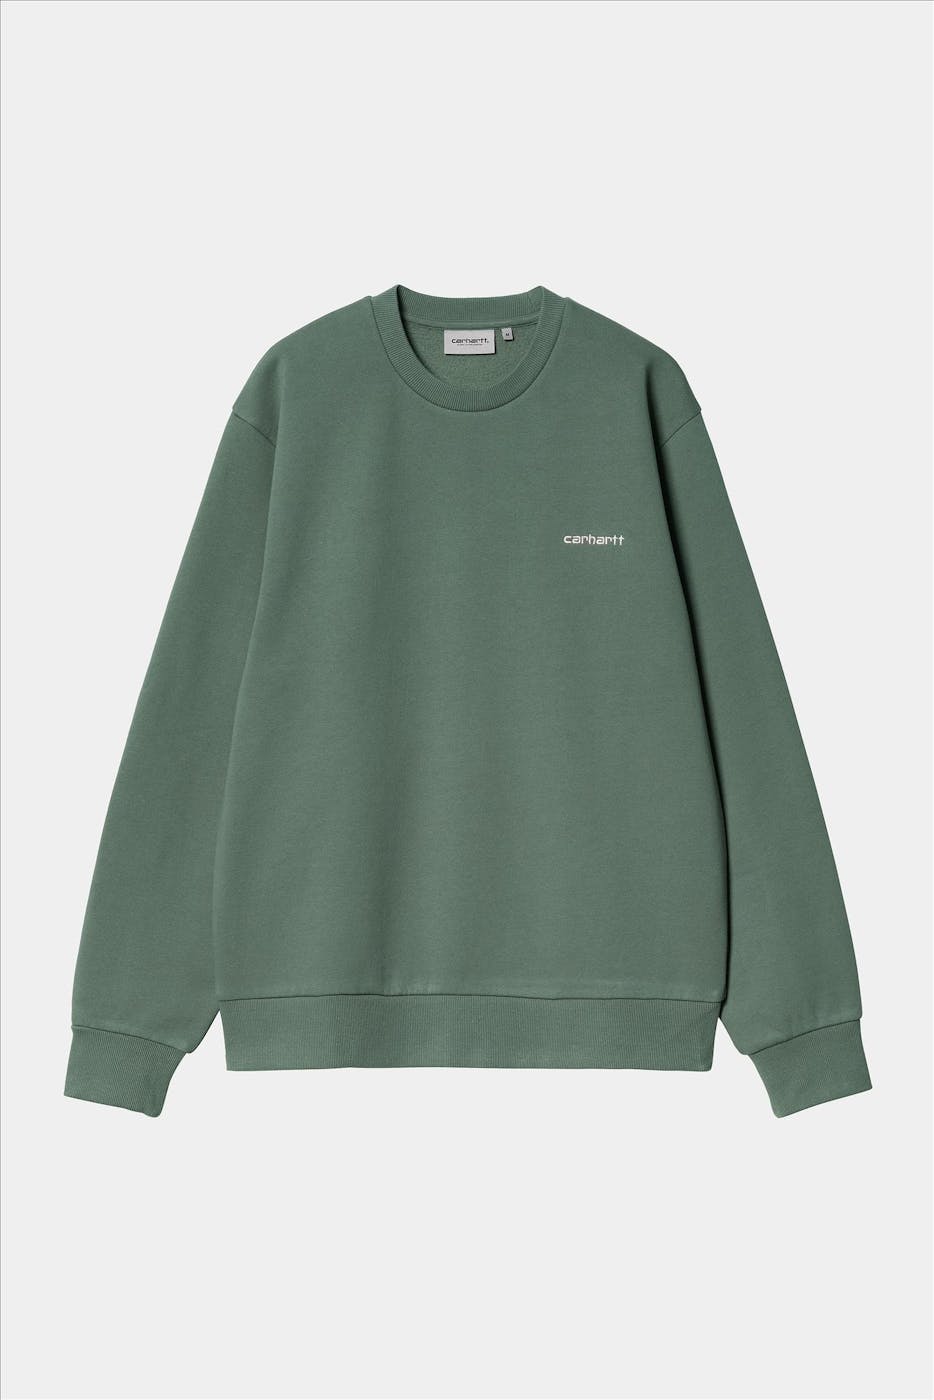 Carhartt WIP - Groene Script Embroidery sweater